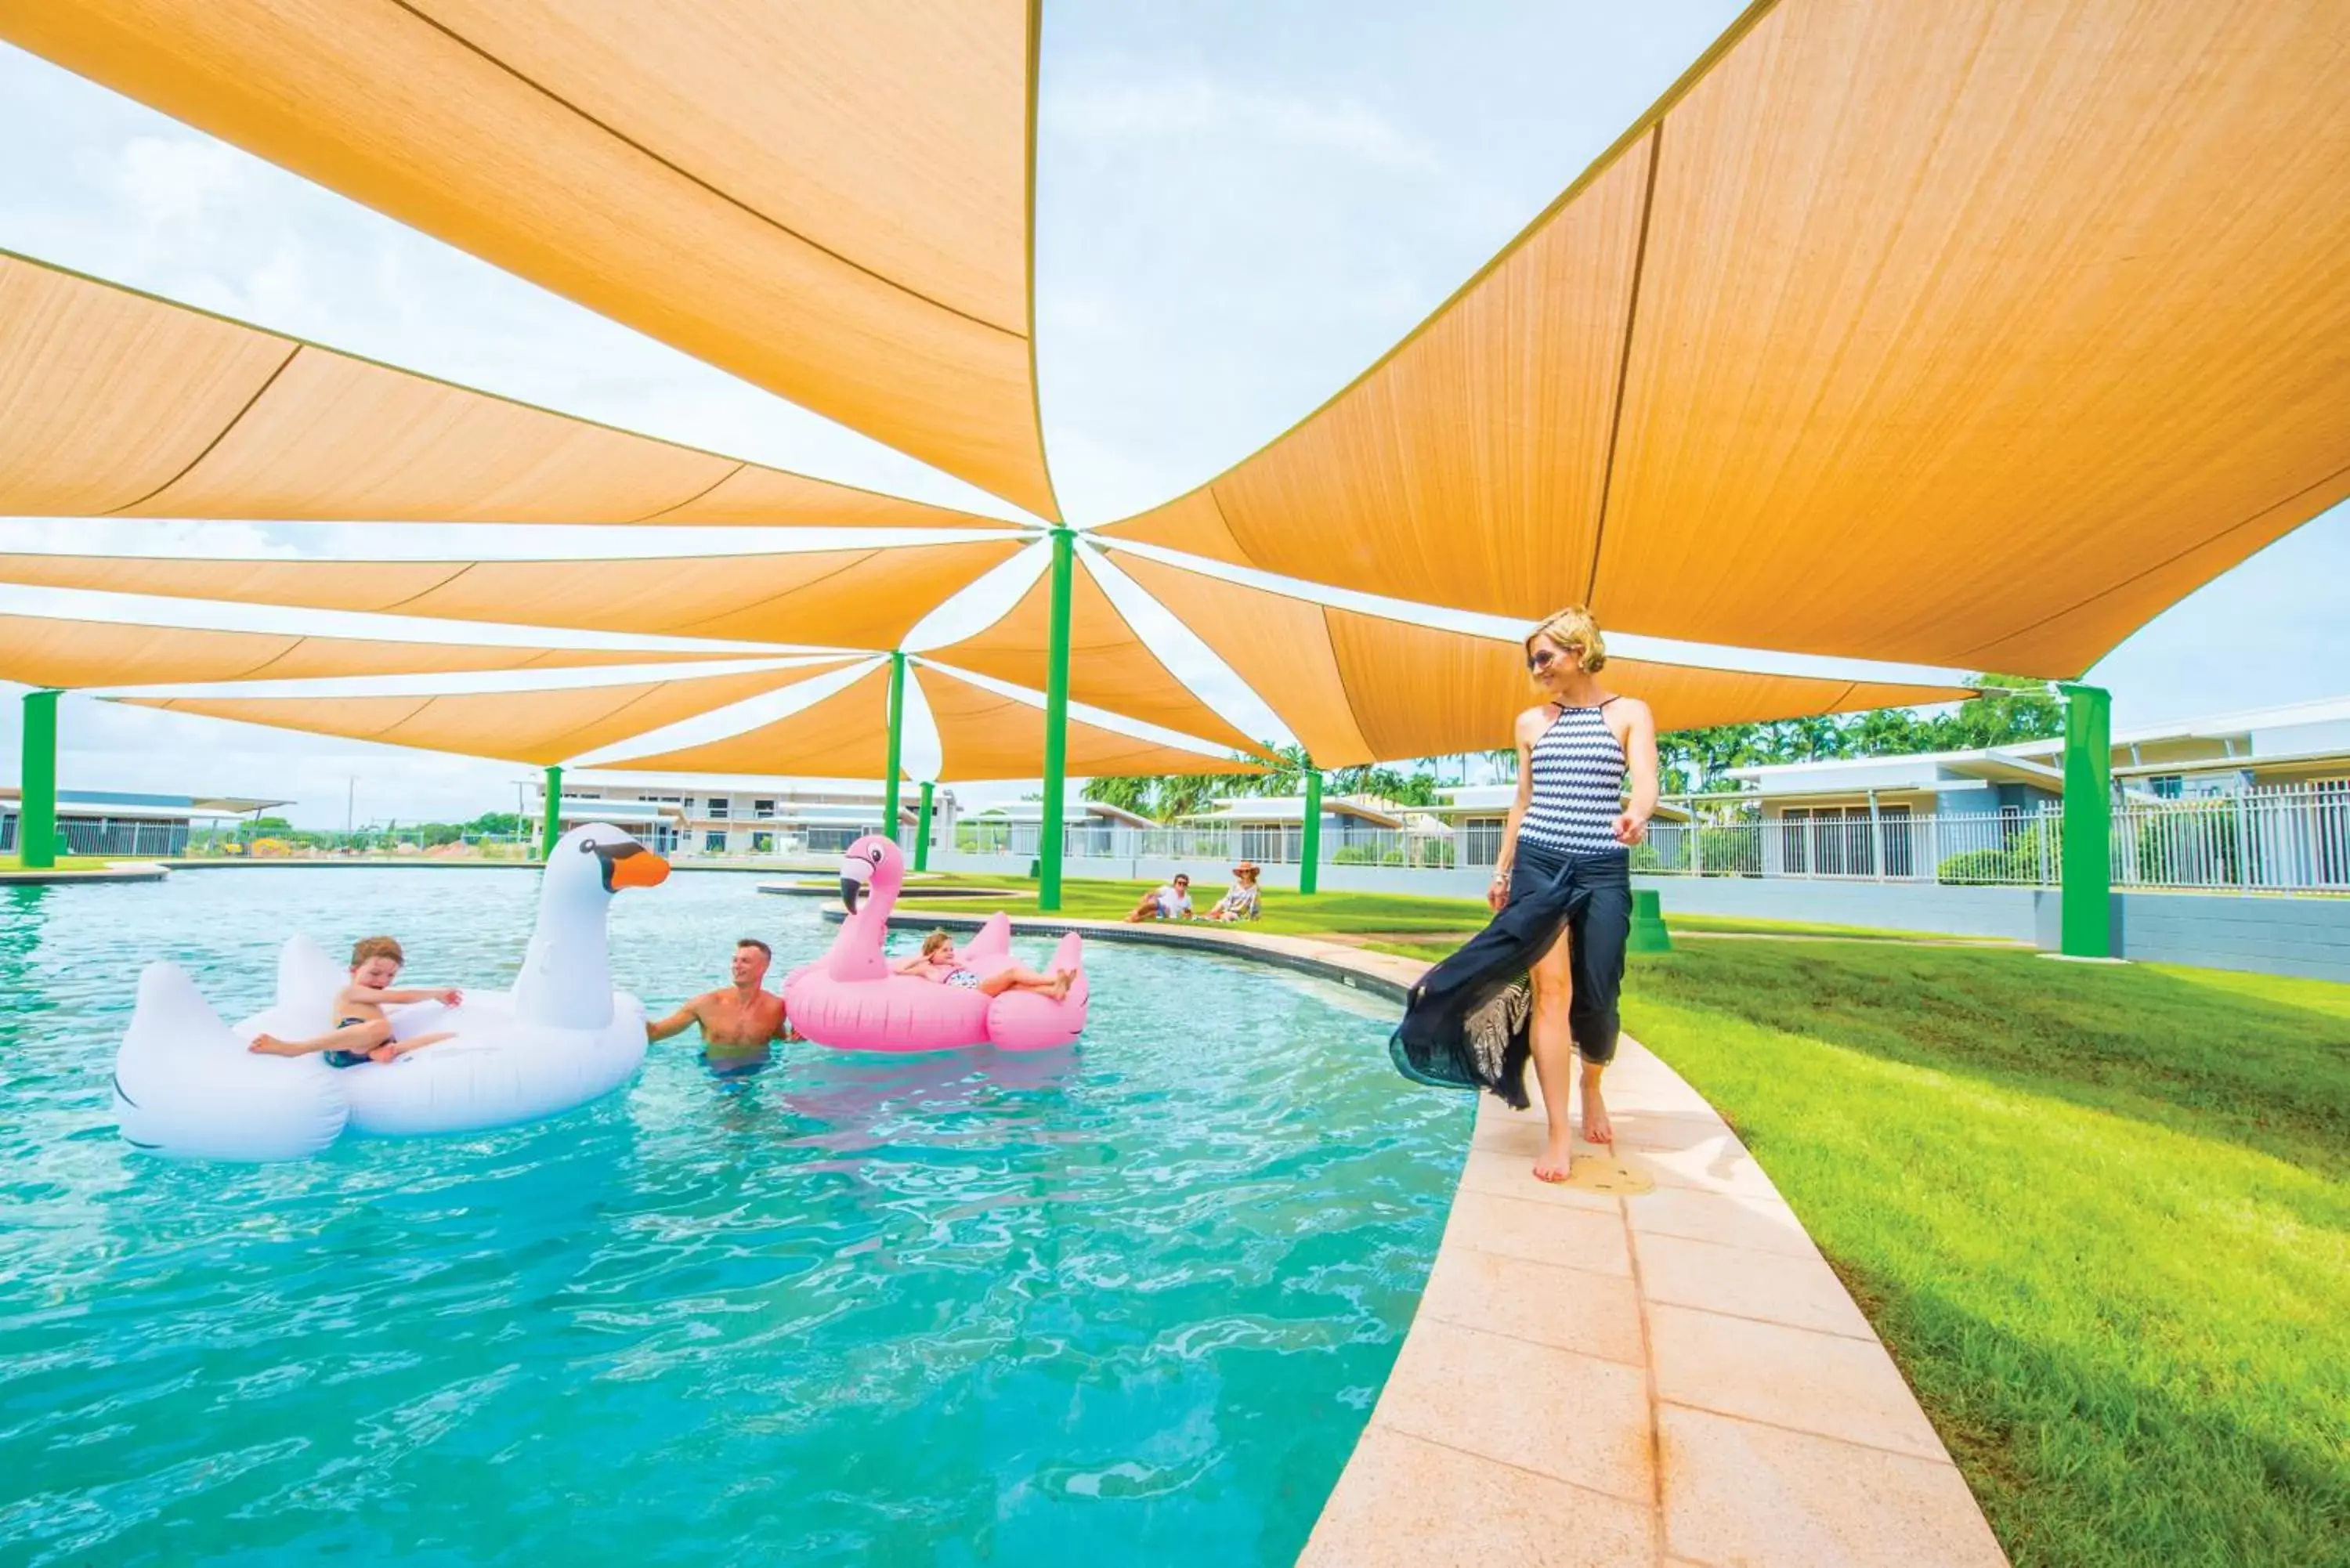 Swimming pool in Club Tropical Resort Darwin